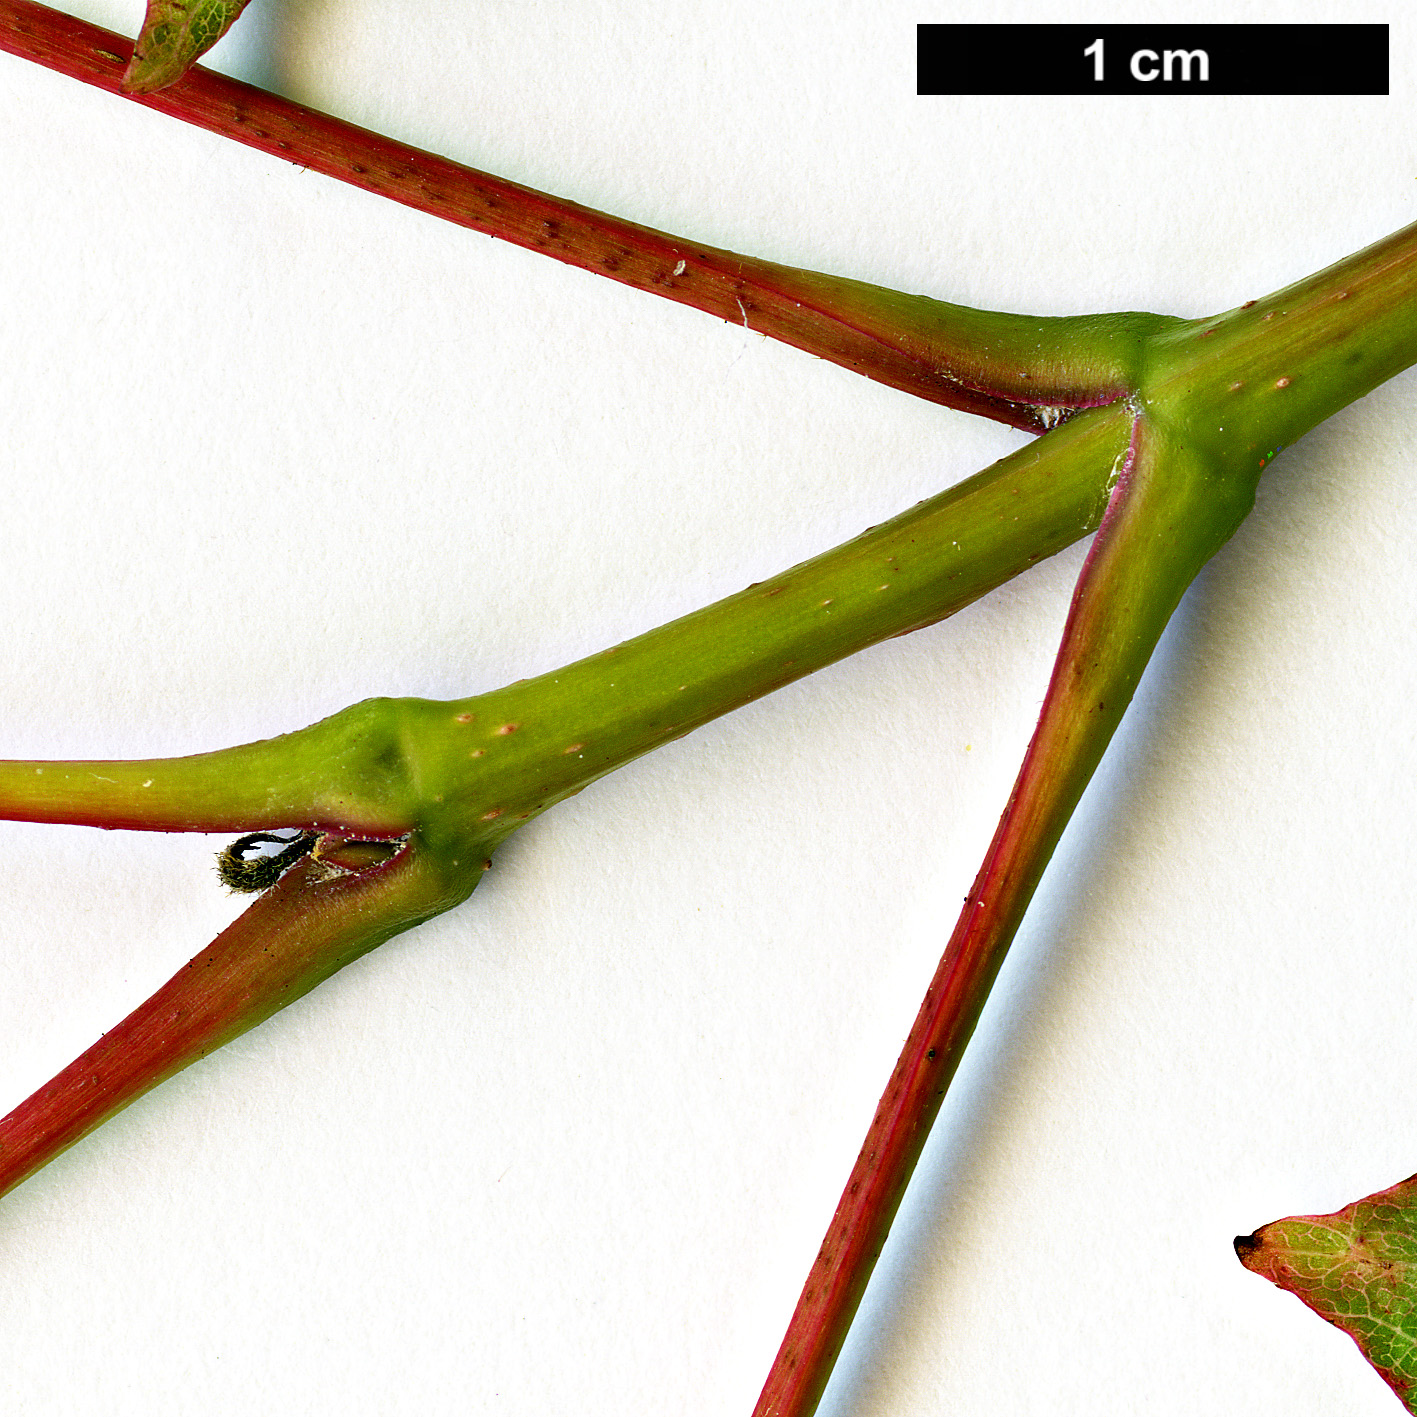 High resolution image: Family: Sapindaceae - Genus: Acer - Taxon: tibetense